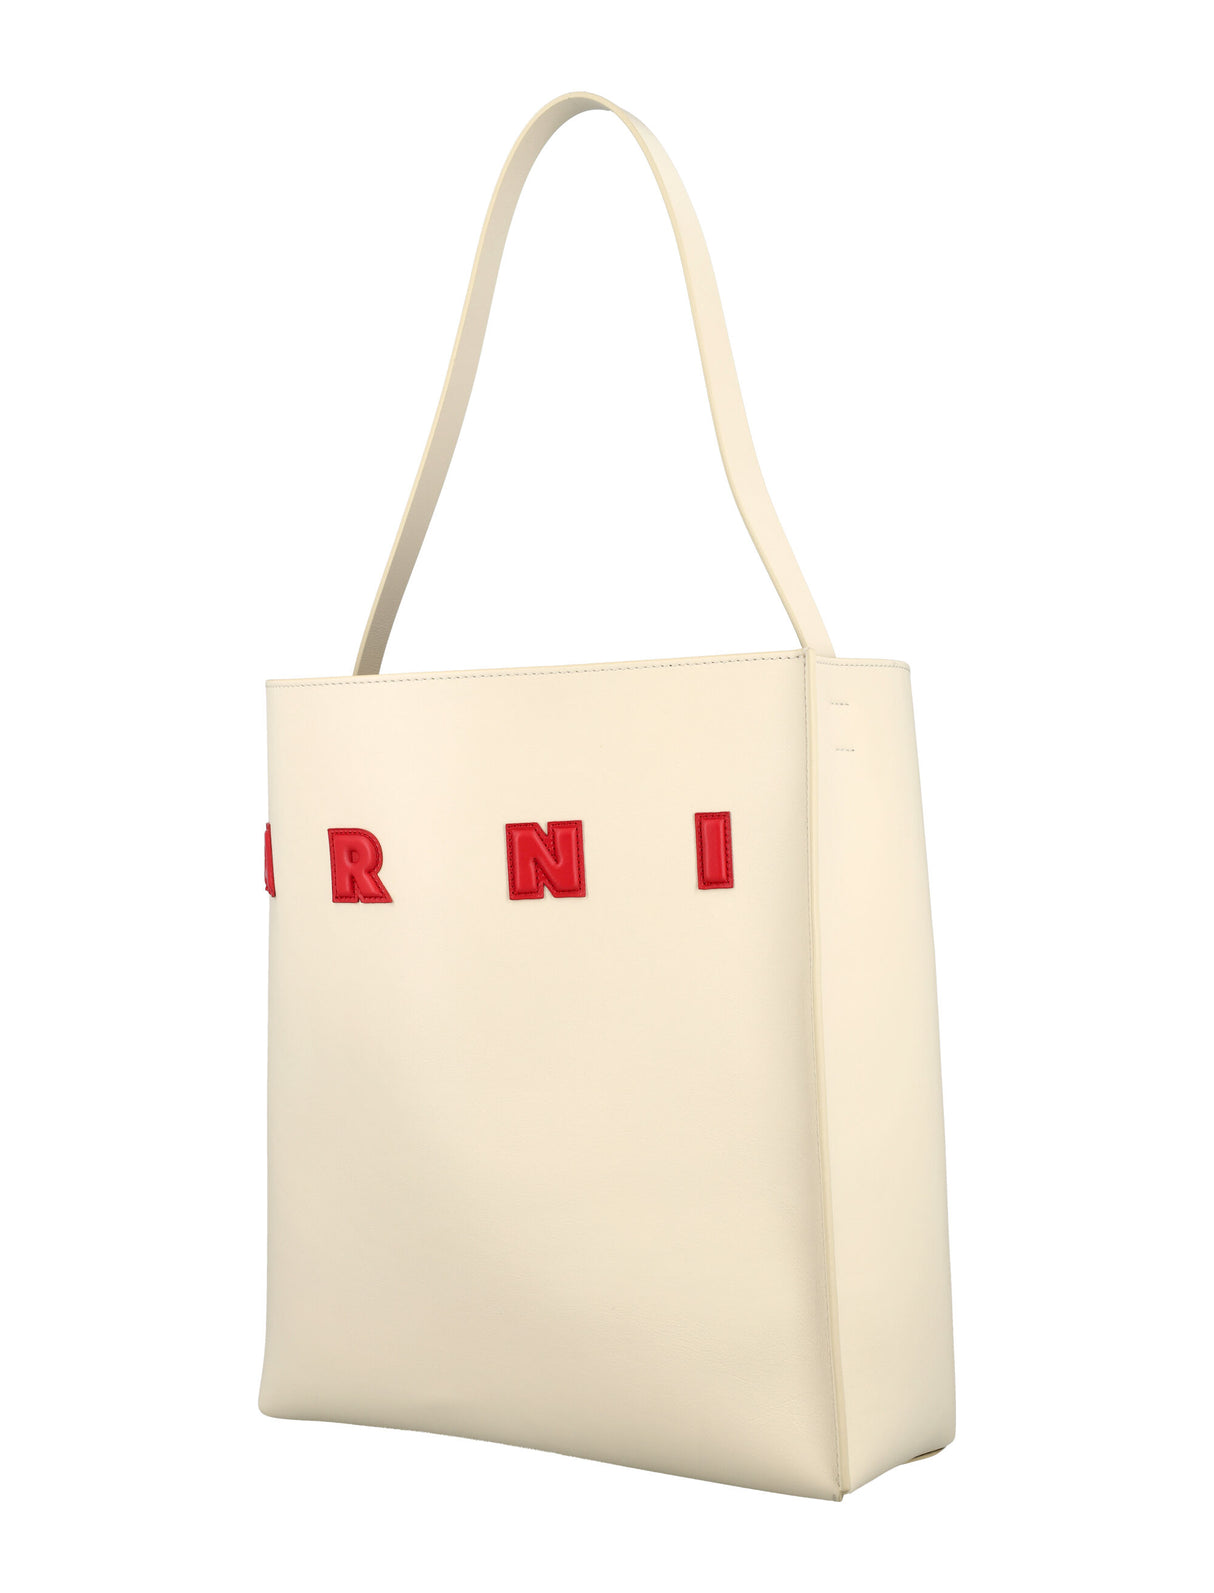 حقيبة كتف متوسطة بتصميم متحف بجلد أبيض وأحمر للنساء